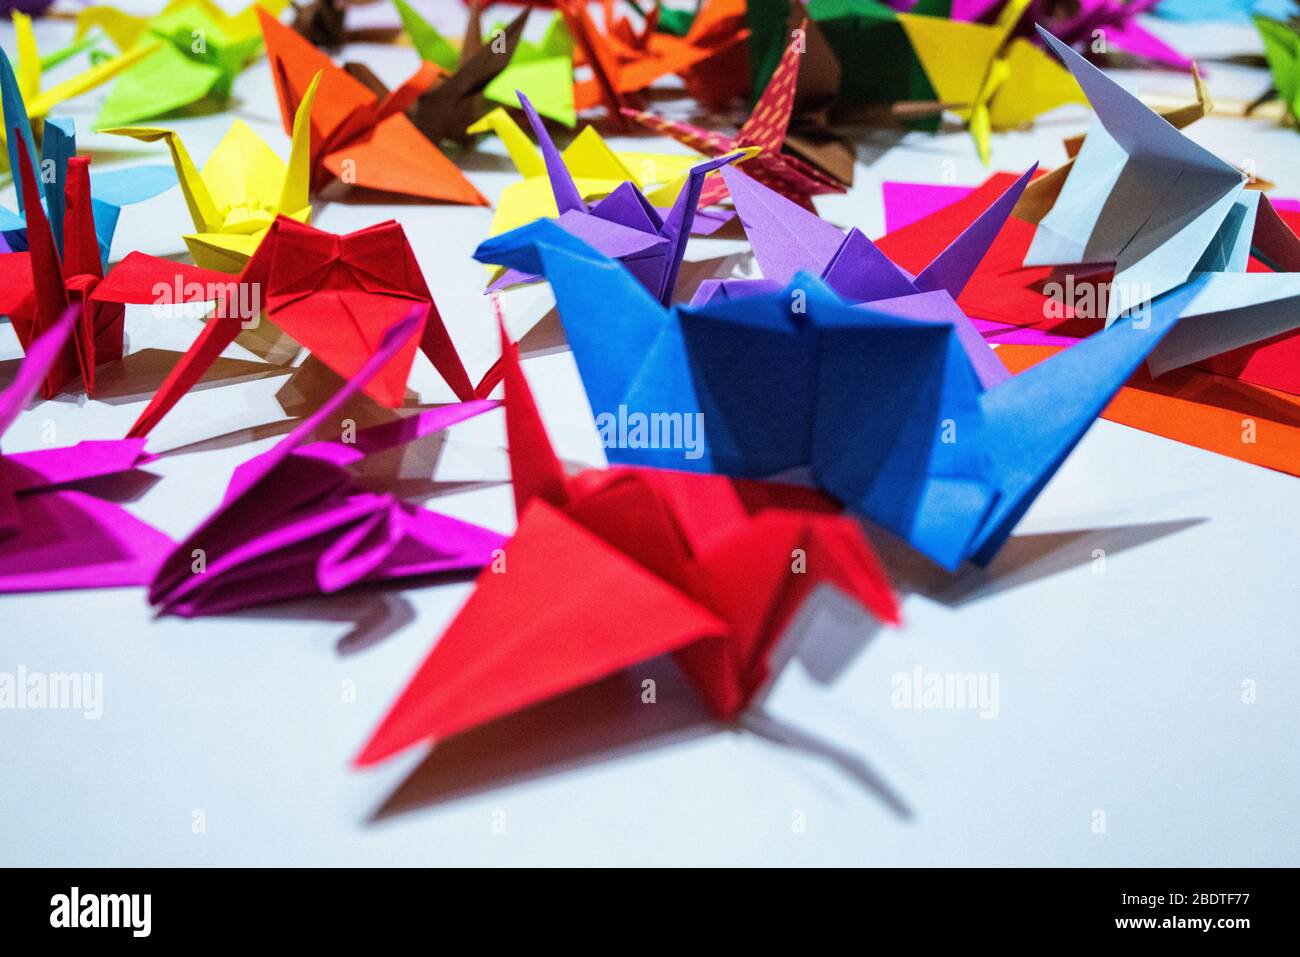 Aigami multicolore, cygnes en papier, oiseaux. Beaucoup d'arigami multicolore. Arigami simple et facile. Banque D'Images